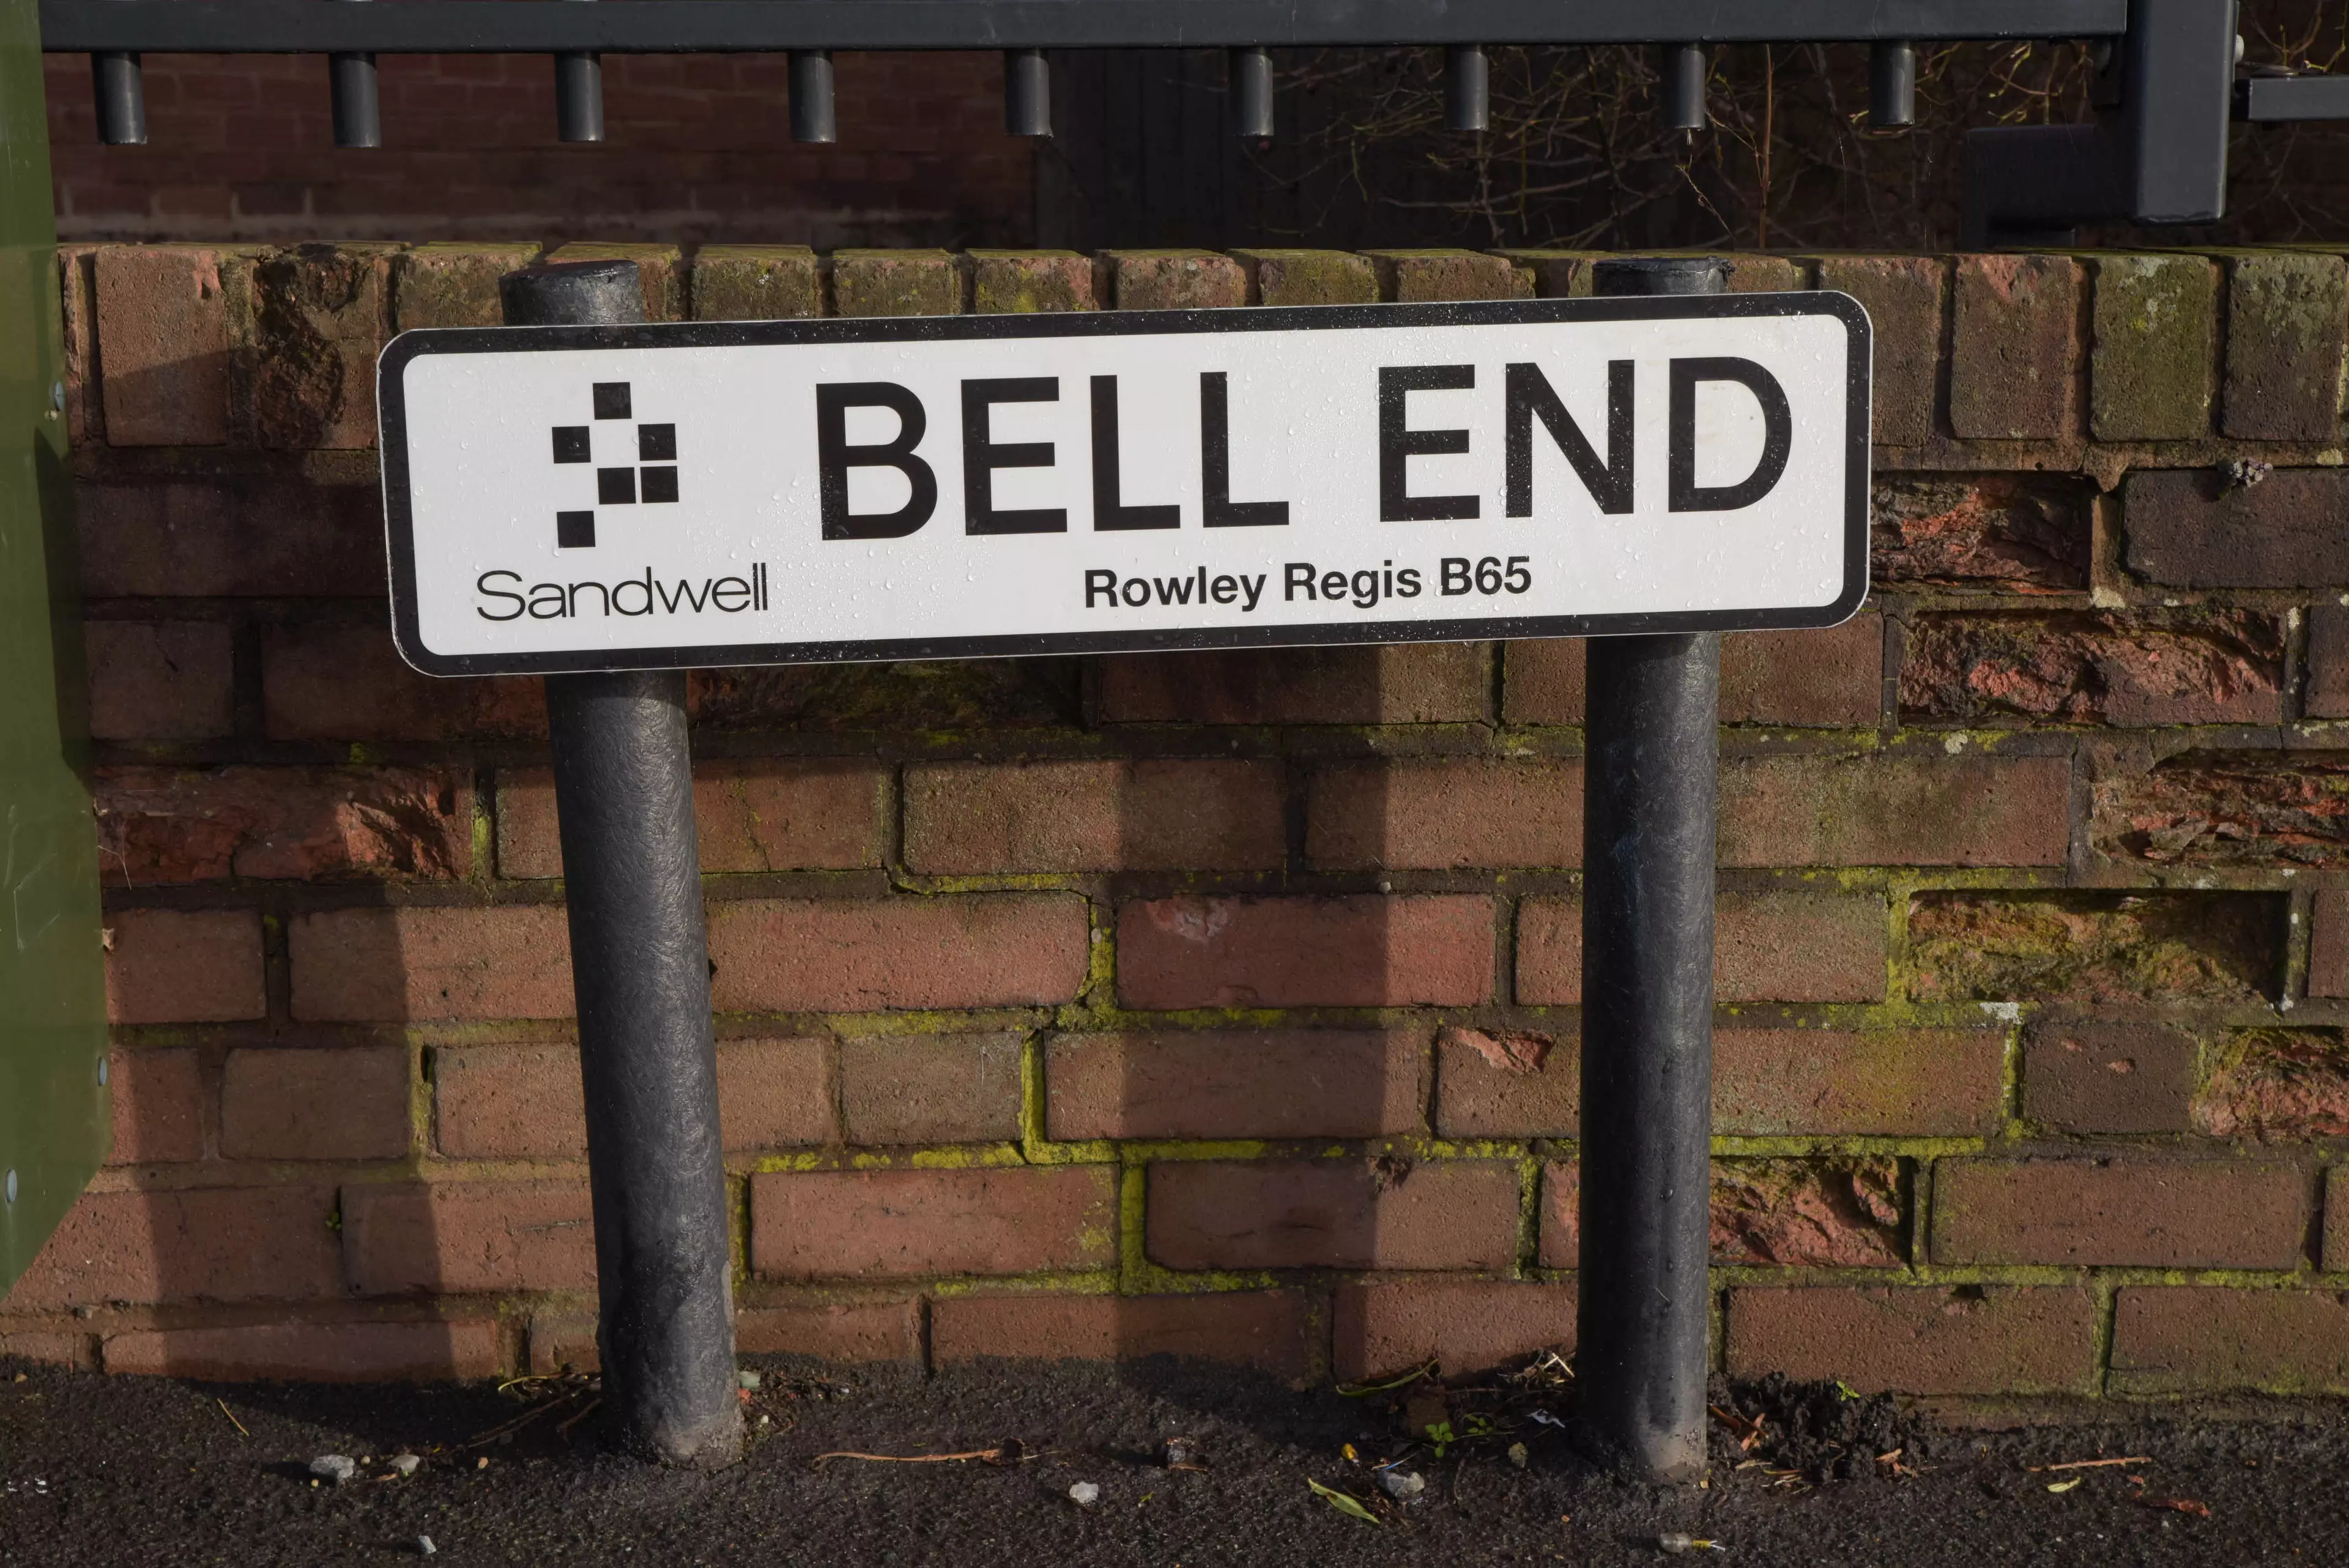 Bell End in Rowley Regis.